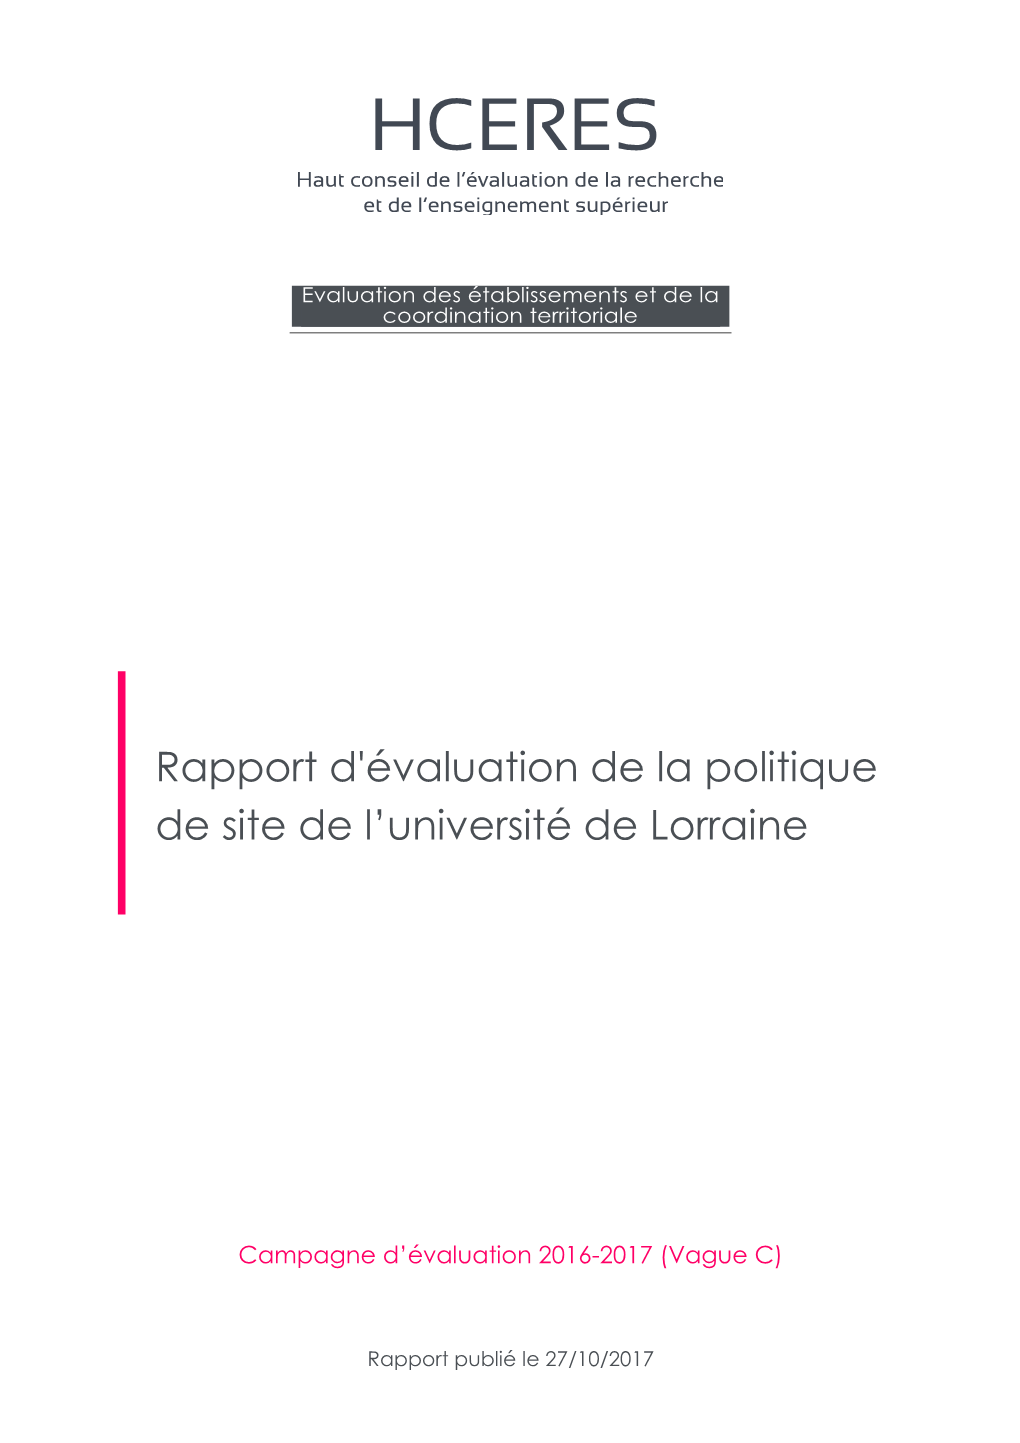 Rapport D'évaluation De La Politique De Site De L'université De Lorraine